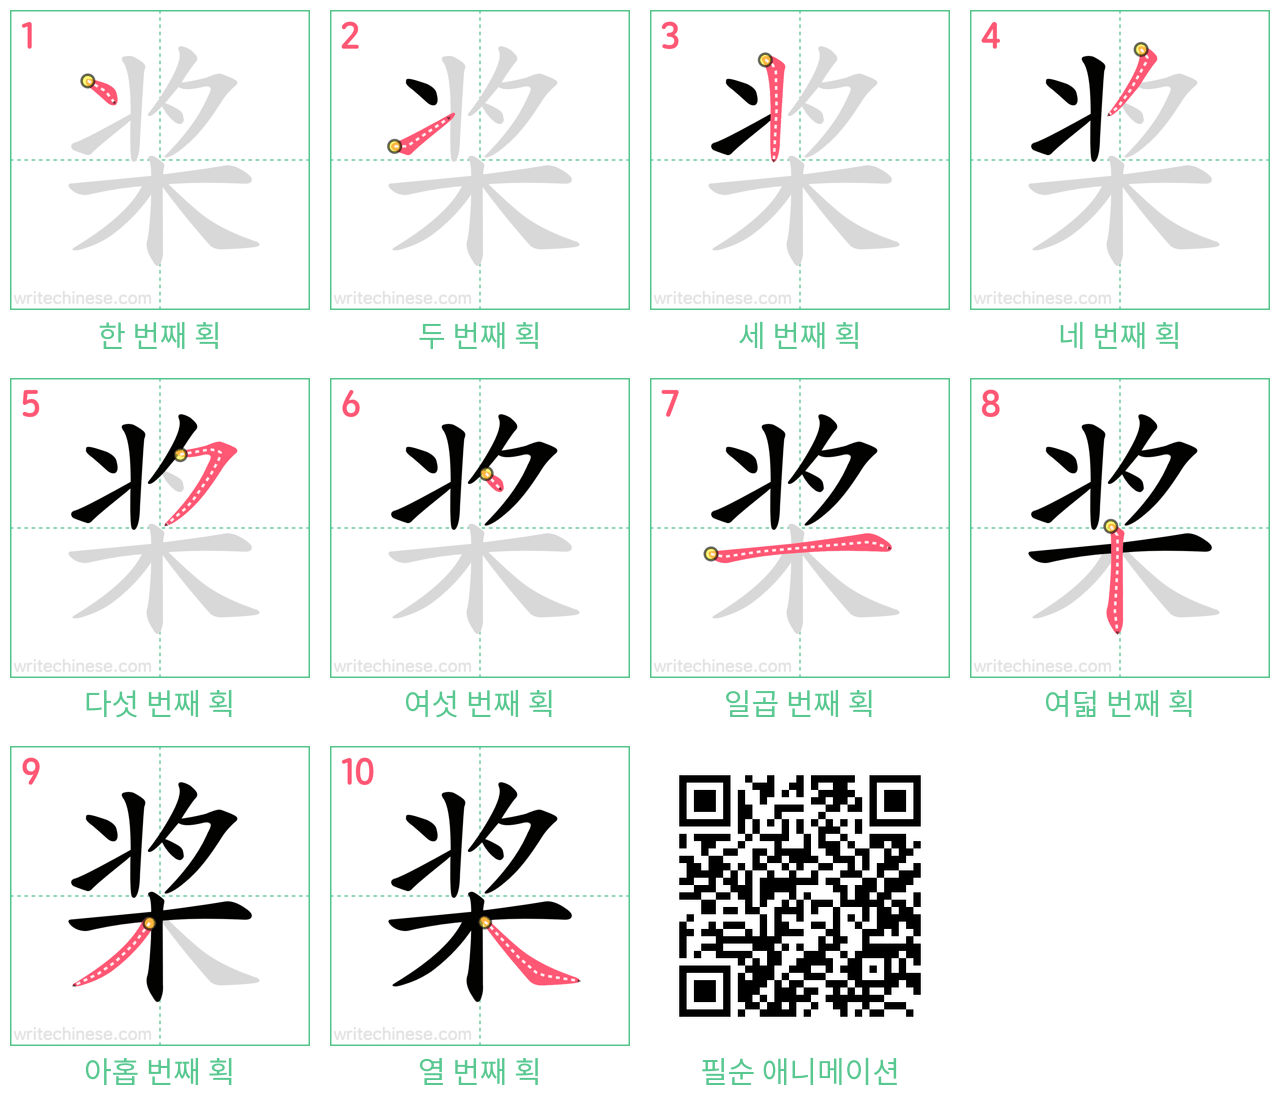 桨 step-by-step stroke order diagrams